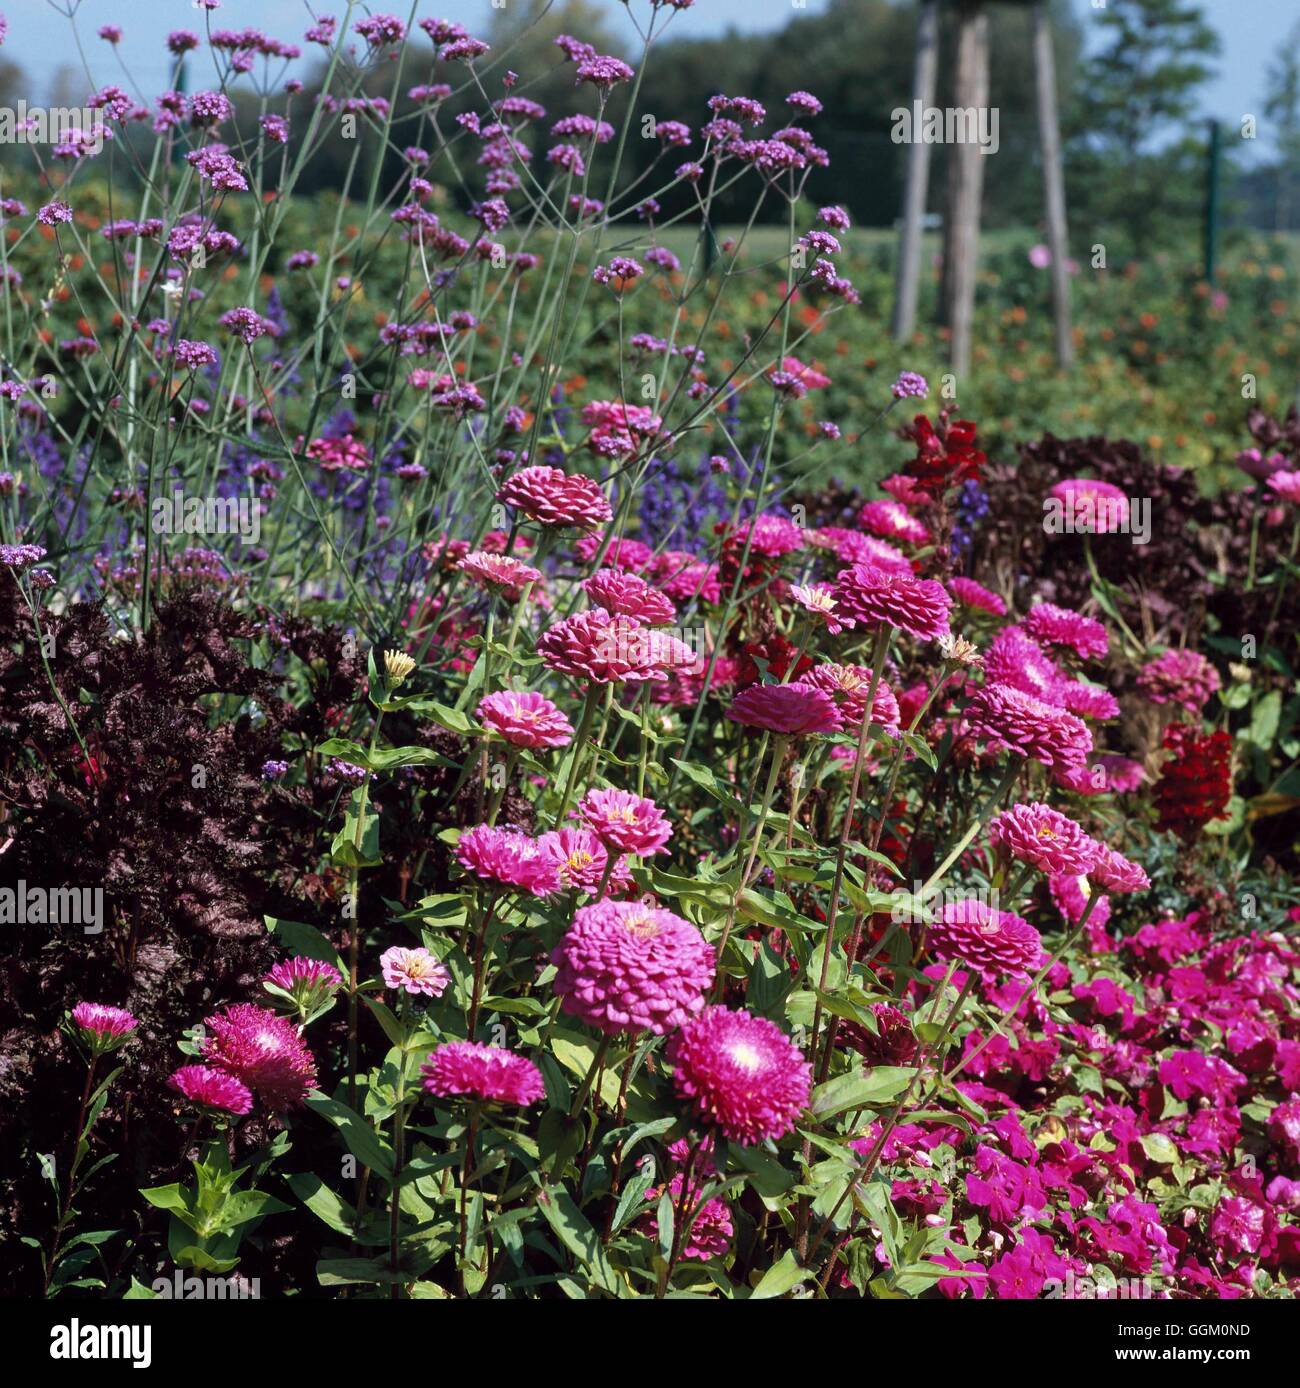 Eine Grenze in Farbe - lila - bepflanzt mit Impatiens Zinnien Astern Eisenkraut und Perilla OCB104969 obligatorische Cred Stockfoto